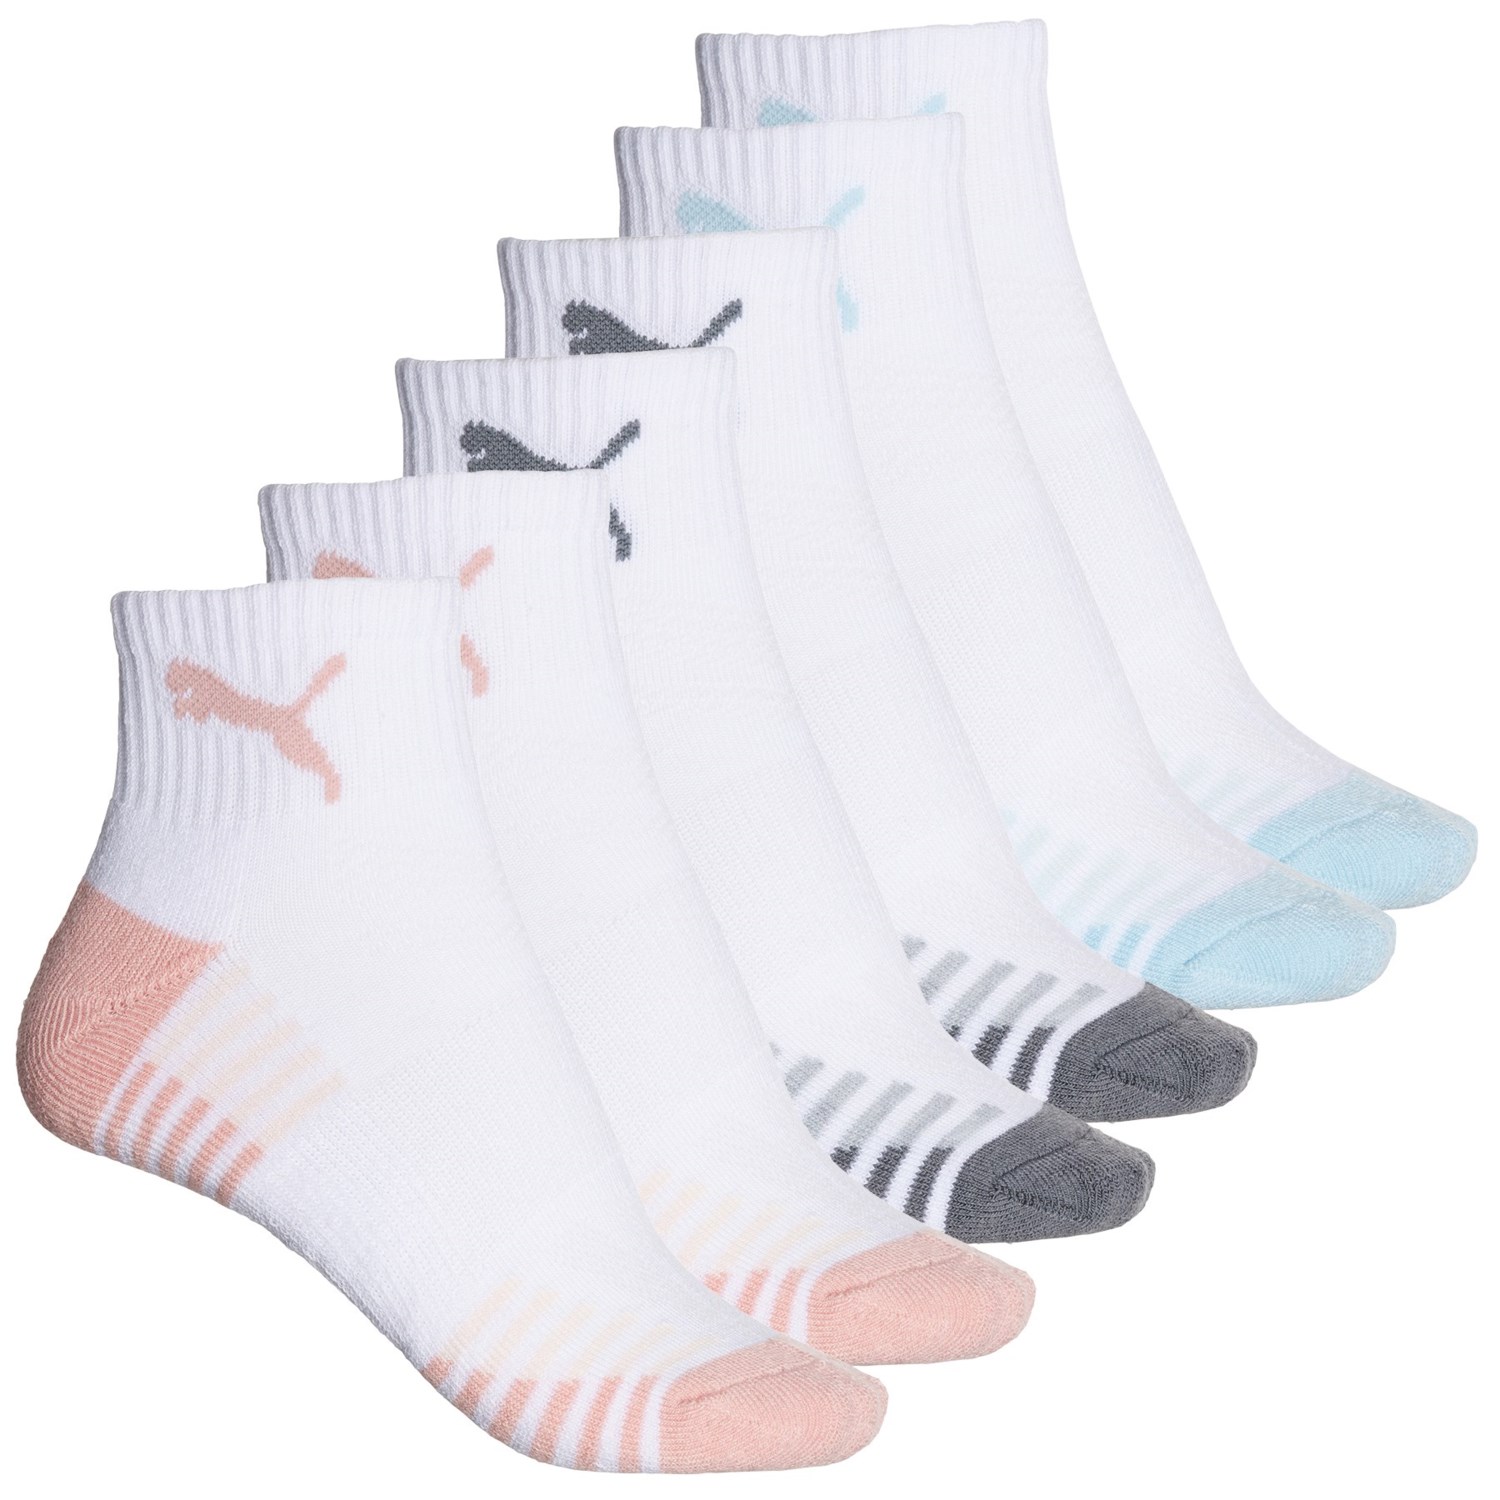 取寄 プーマ レディース ハーフ クッション テリー アルティメット トレーニング ソックス Puma women Half Cushion Terry Ultimate Training Socks For Women White/Light Pink